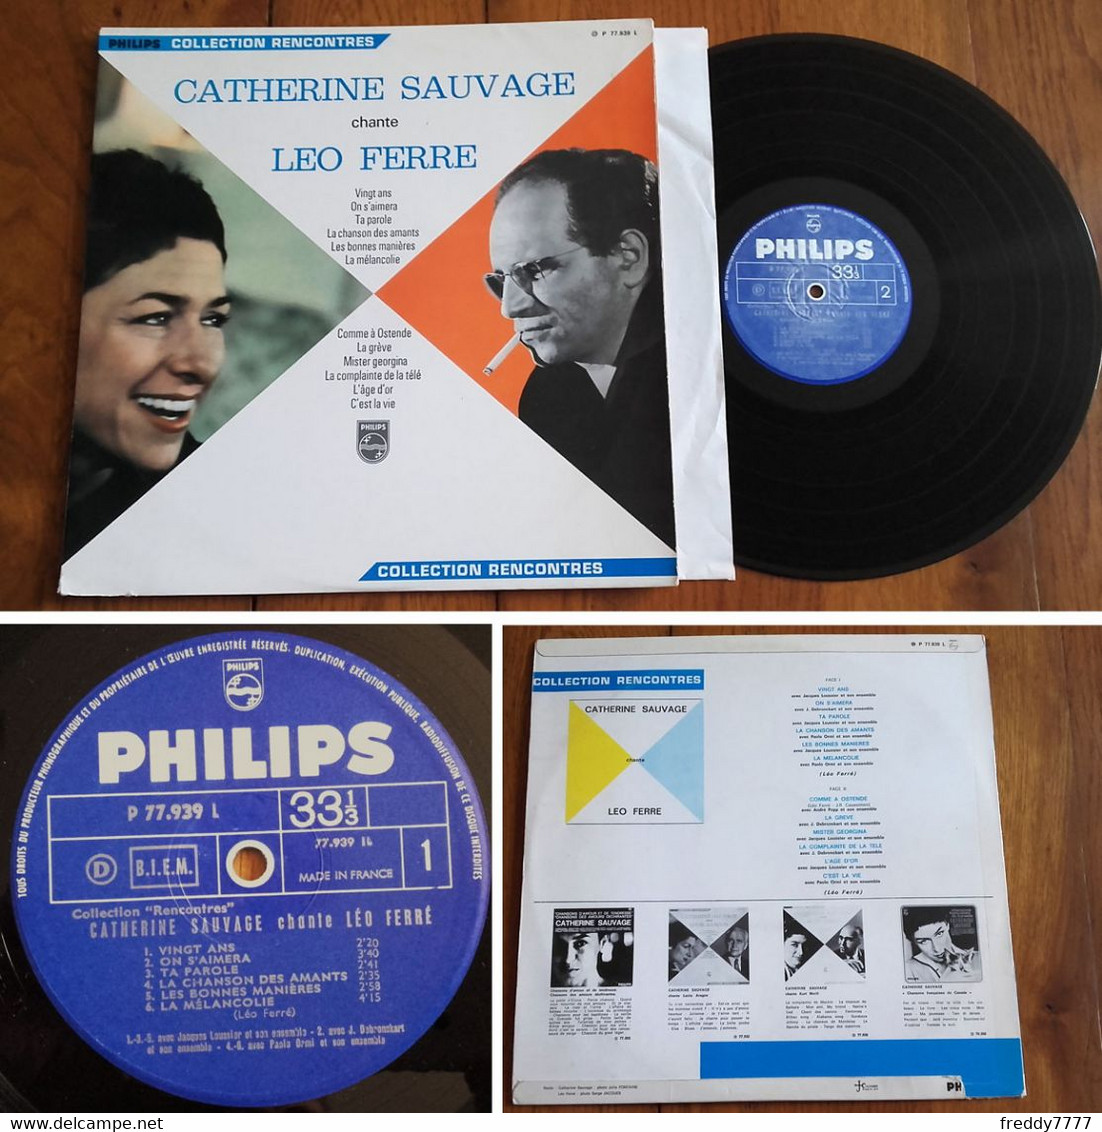 RARE French LP 33t RPM BIEM (12") CATHERINE SAUVAGE Chante LEO FERRE (1966) - Ediciones De Colección